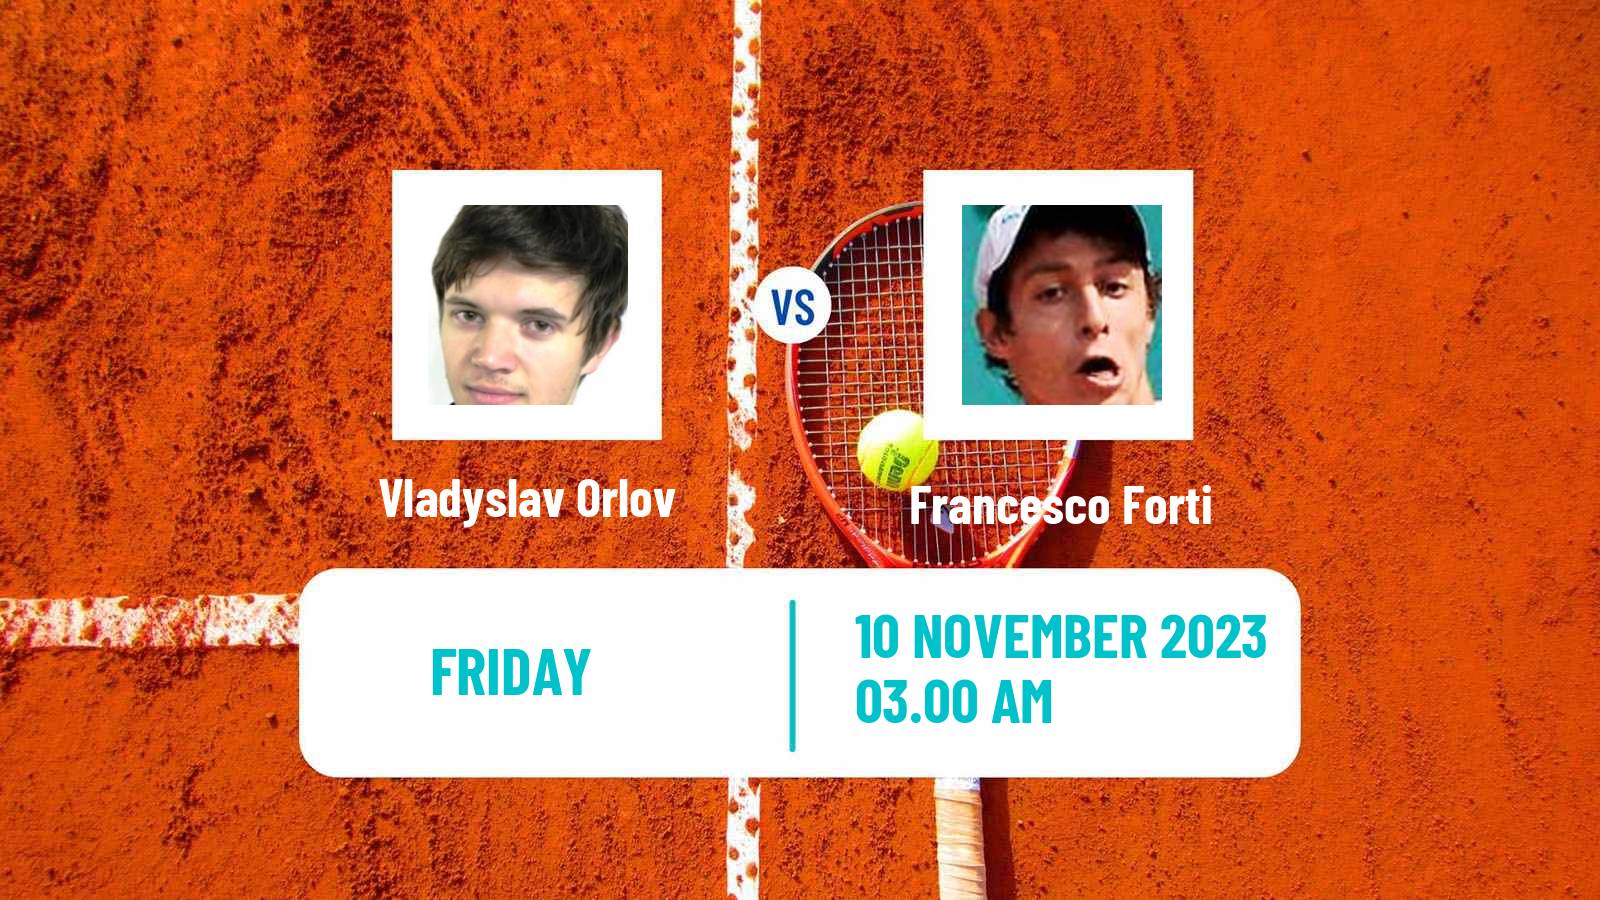 Tennis ITF M25 Heraklion 2 Men Vladyslav Orlov - Francesco Forti